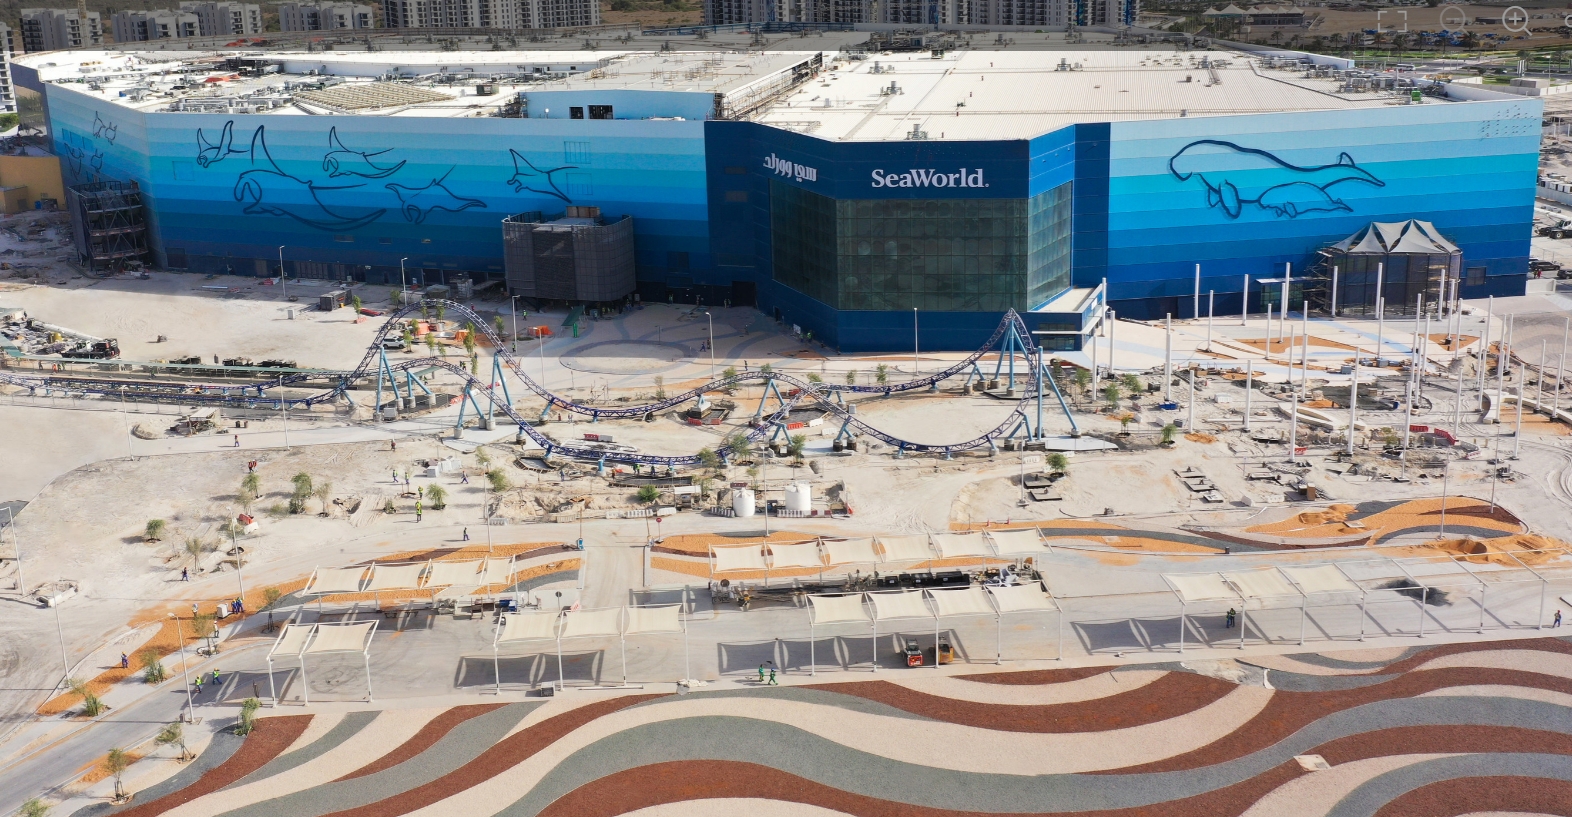 В Абу-Даби открыли иммерсивный парк с крупнейшим аквариумом в мире